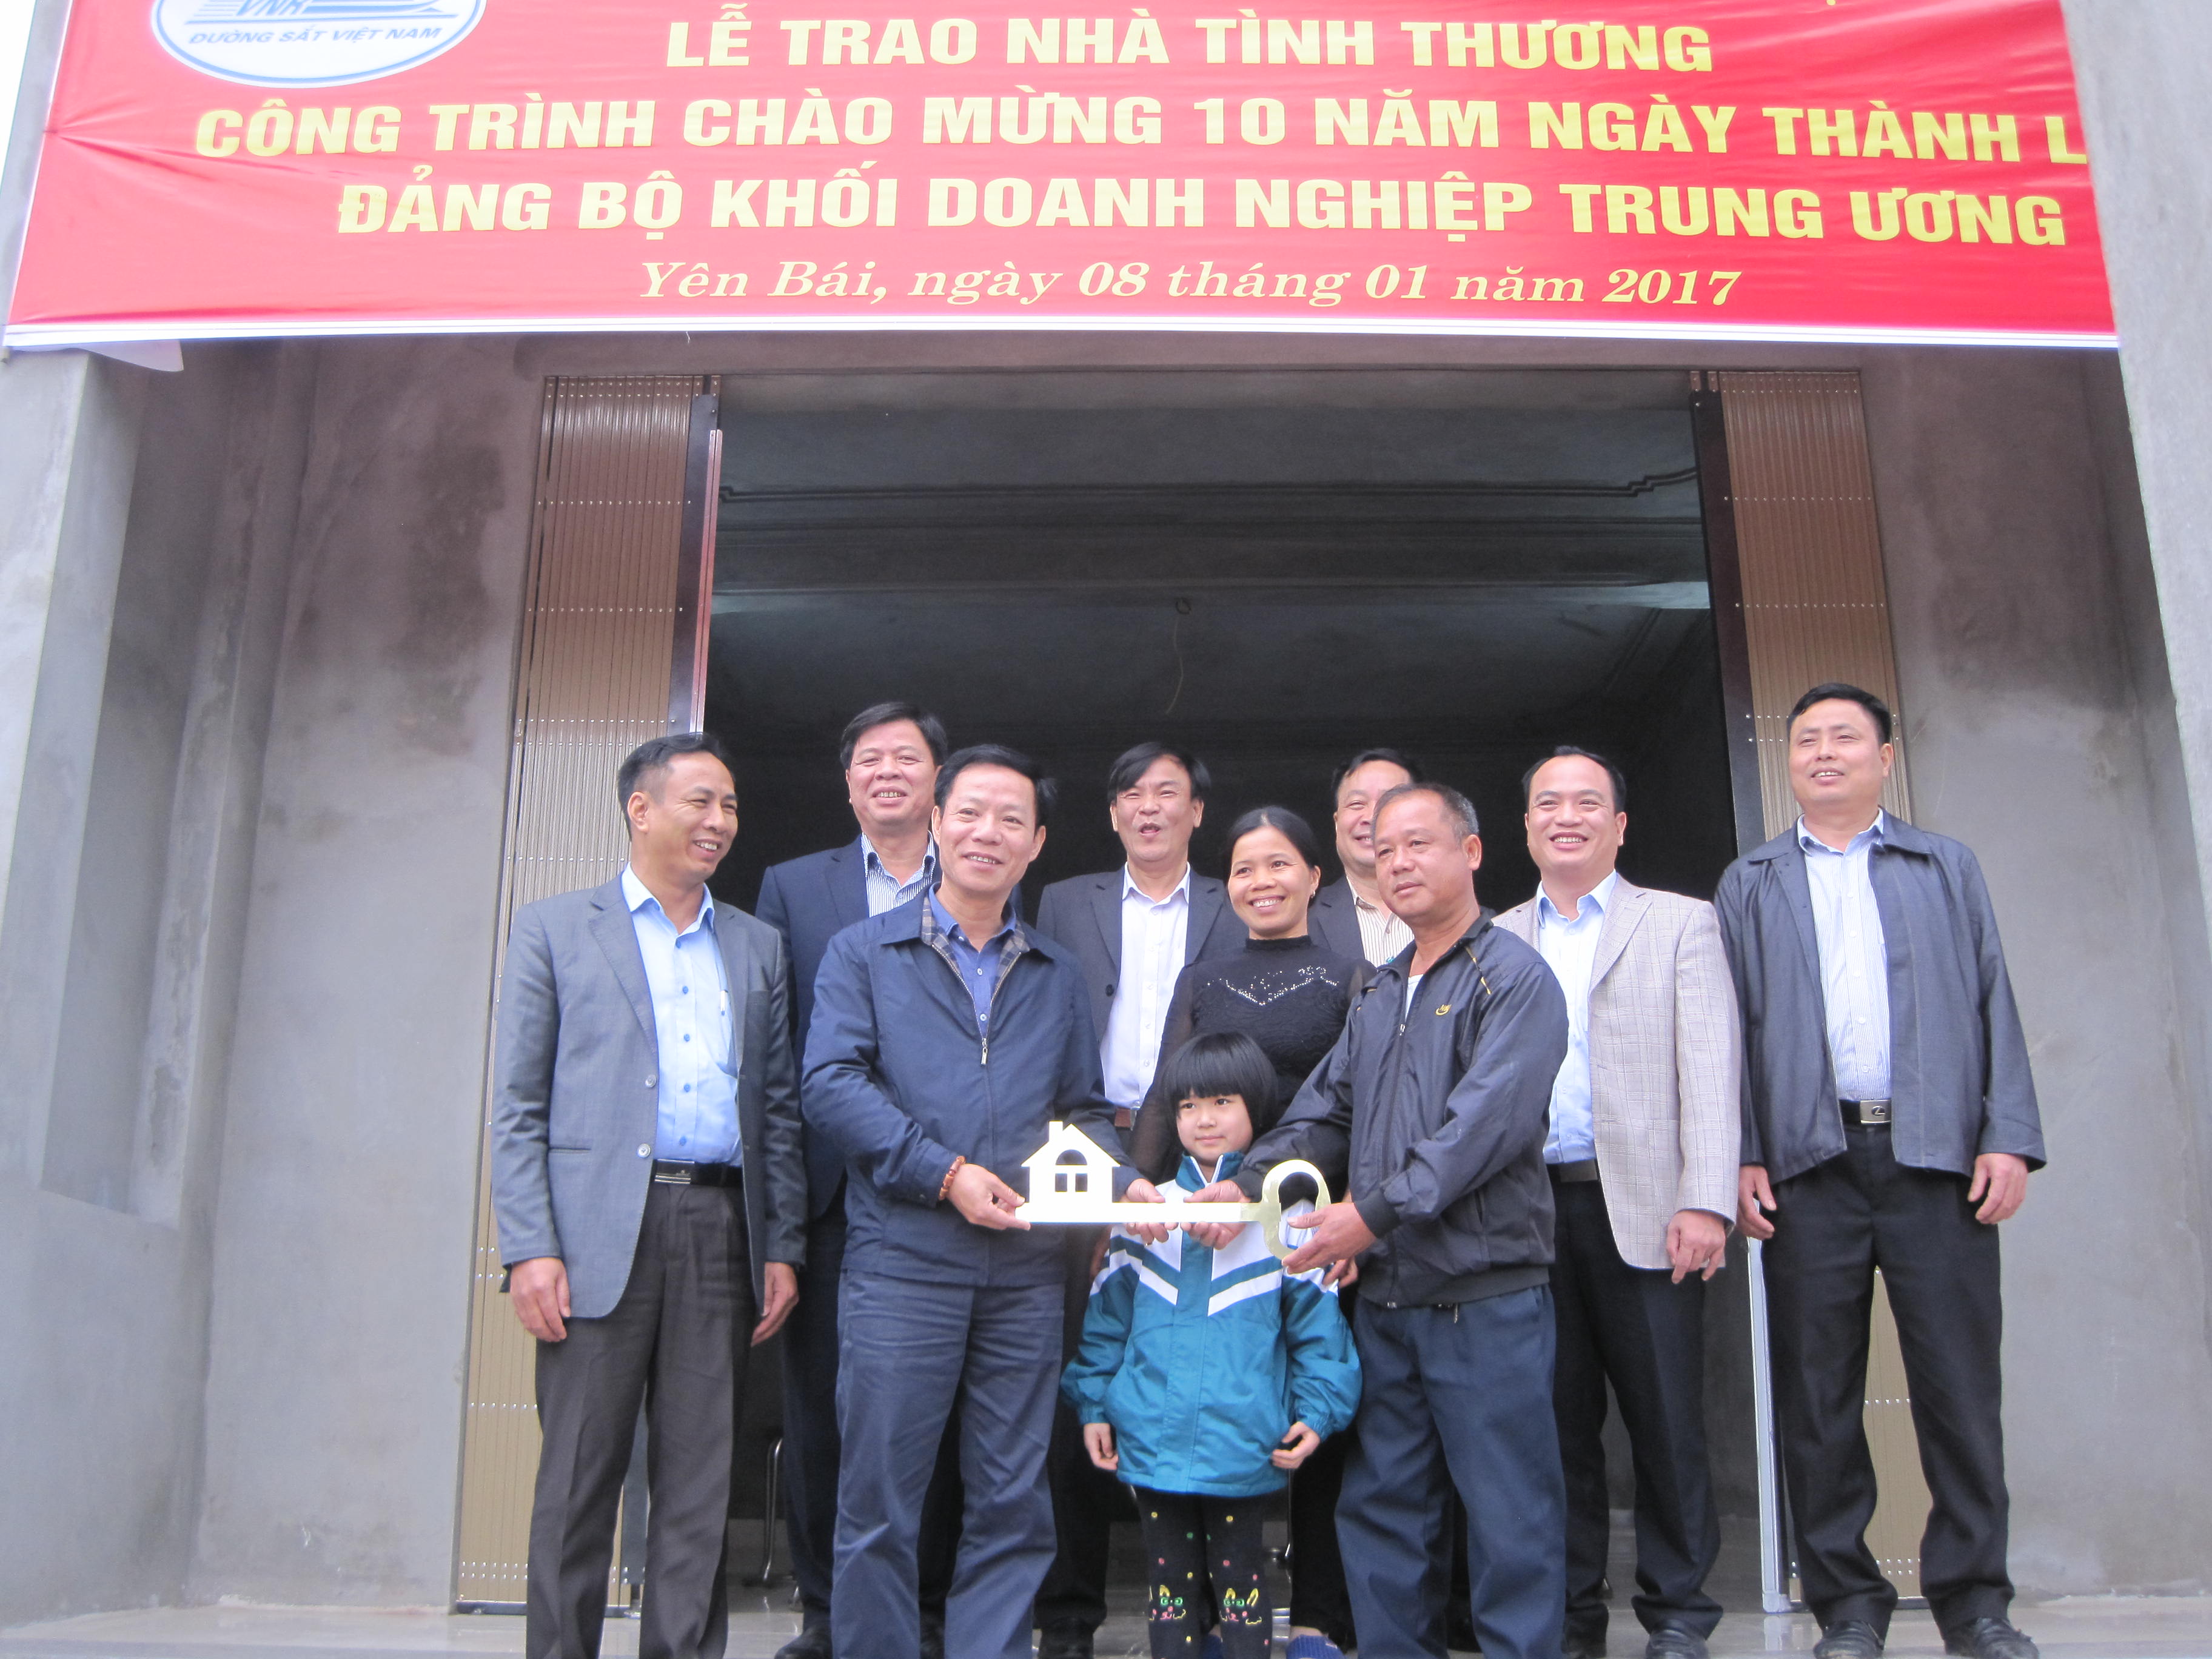 Công đoàn ĐSVN tổ chức trao nhà tình thương cho công nhân tại Yên Bái 